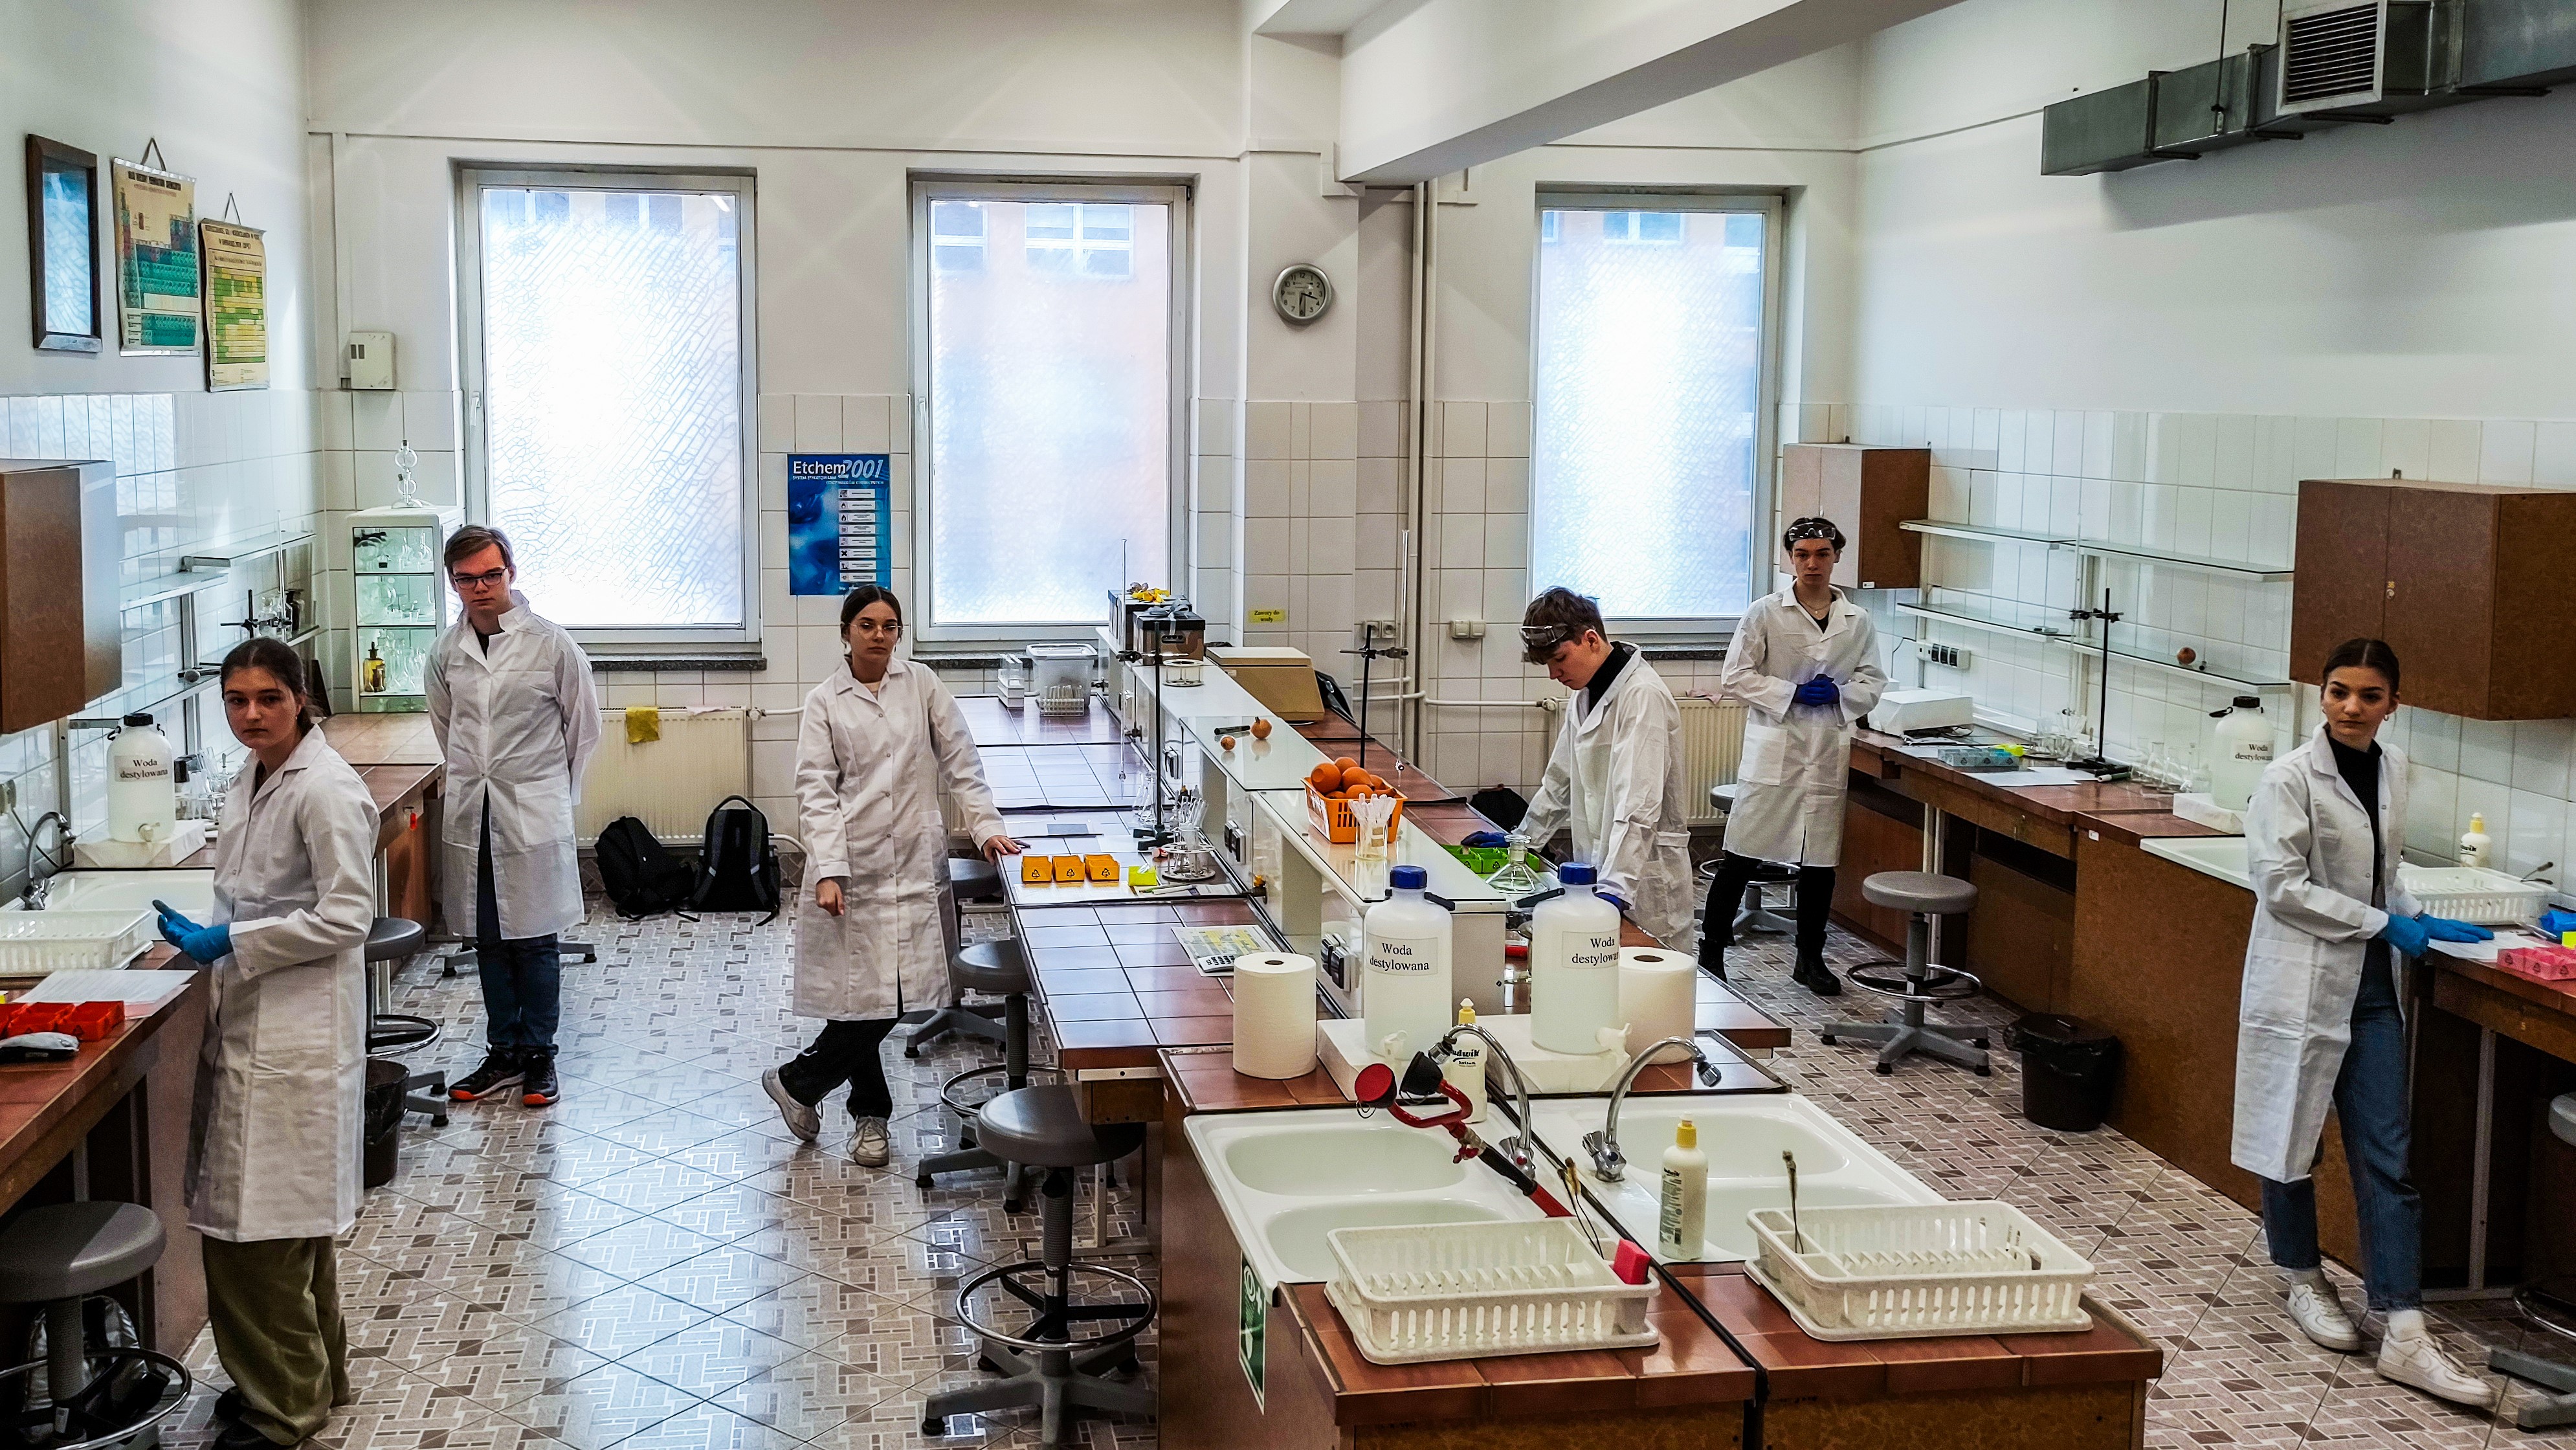 na starcie, laboratorium chemiczne z finalistami Konkursu.